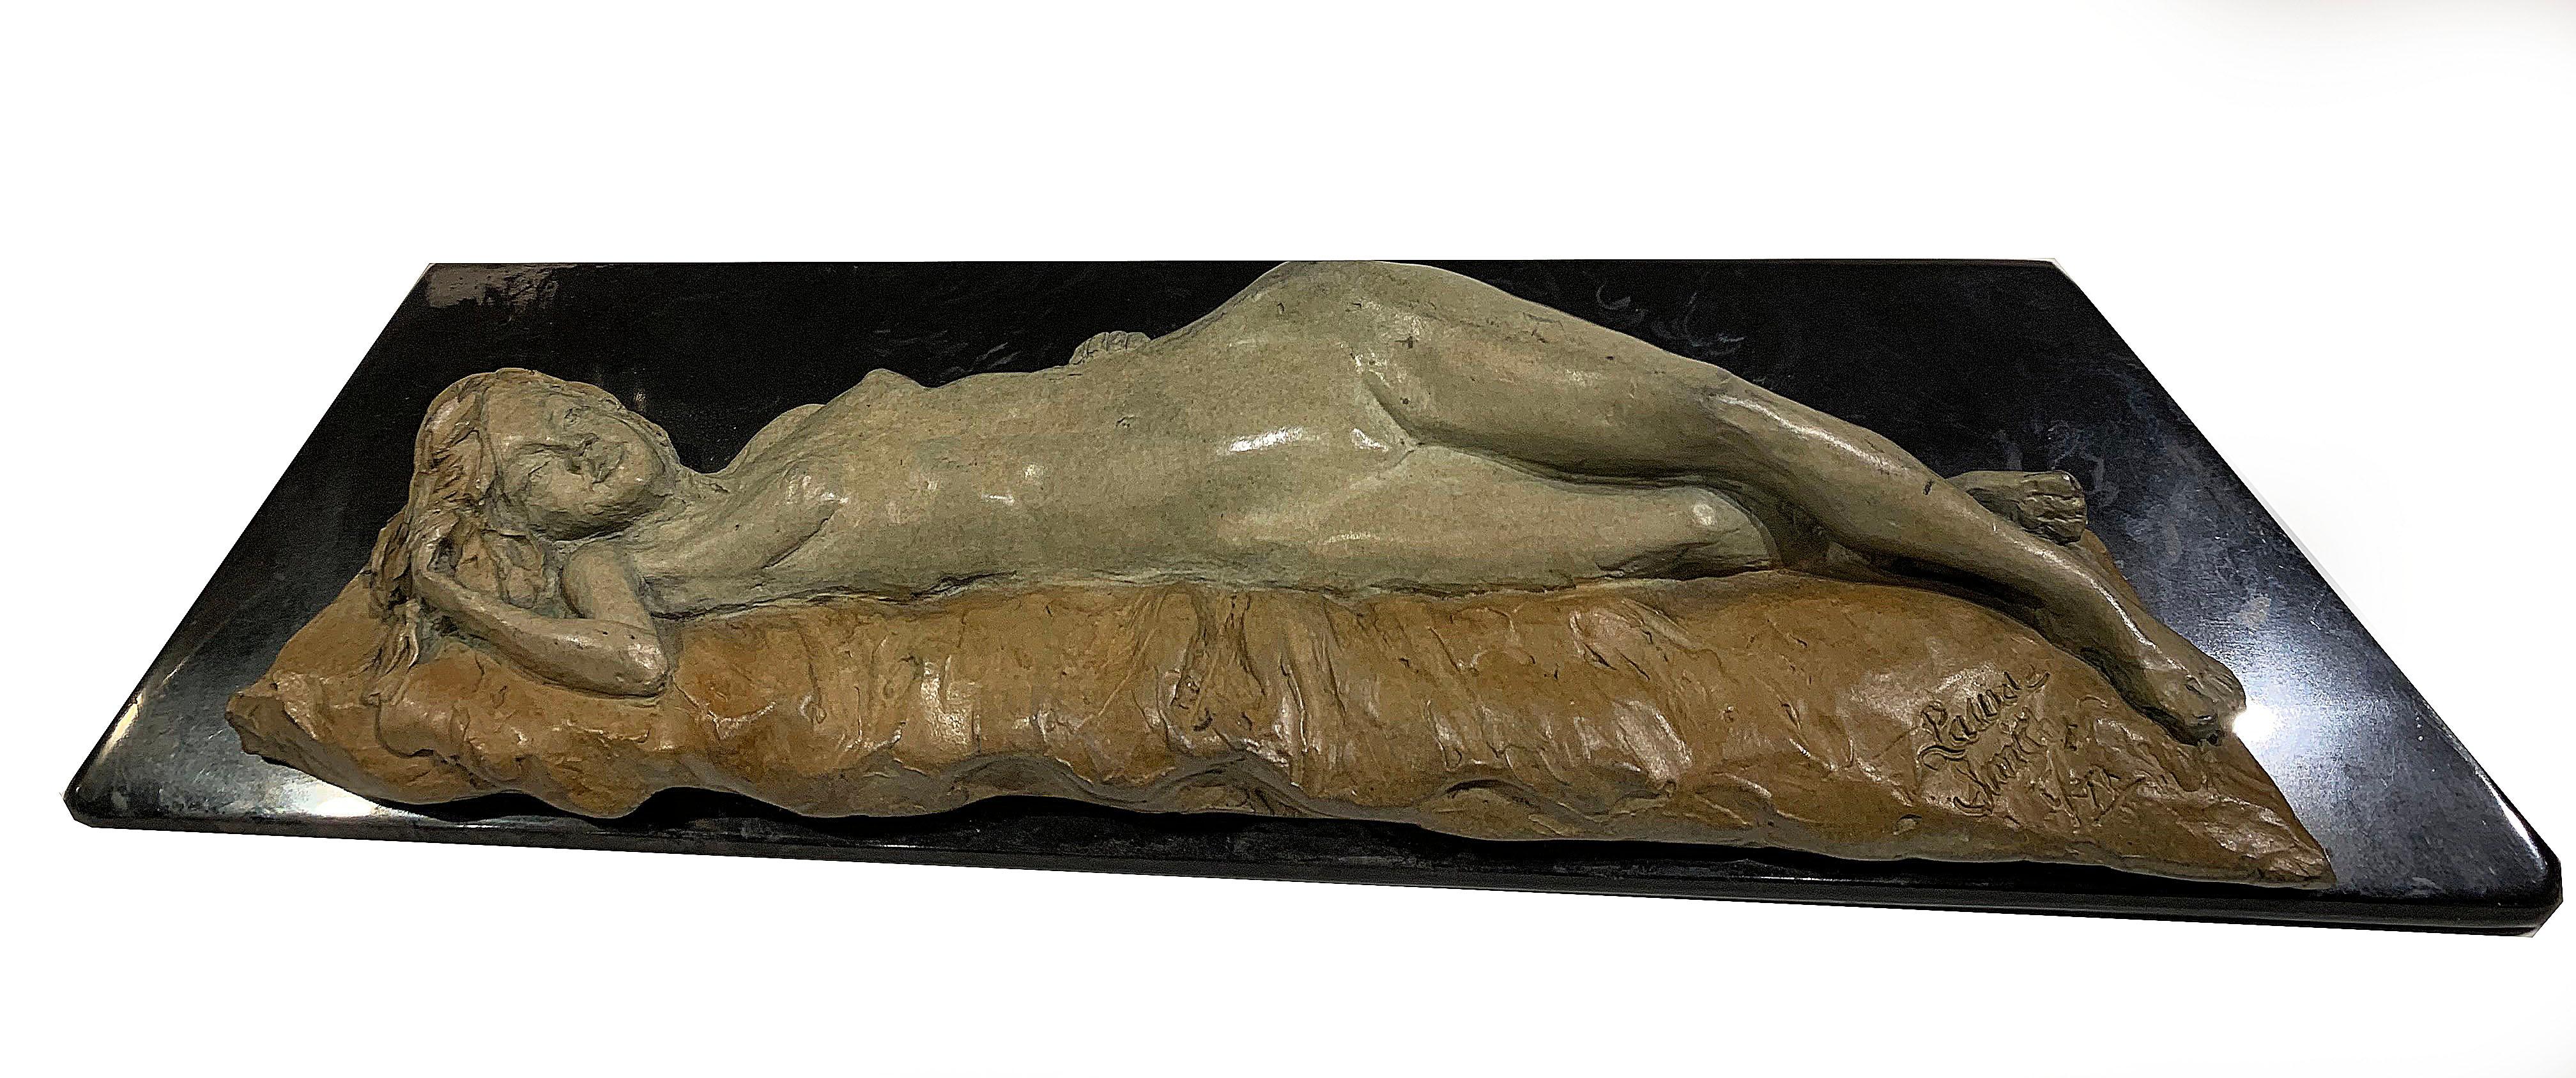 Laura Smith Nude Sculpture - Untitled Nude Figurative Sculpture 